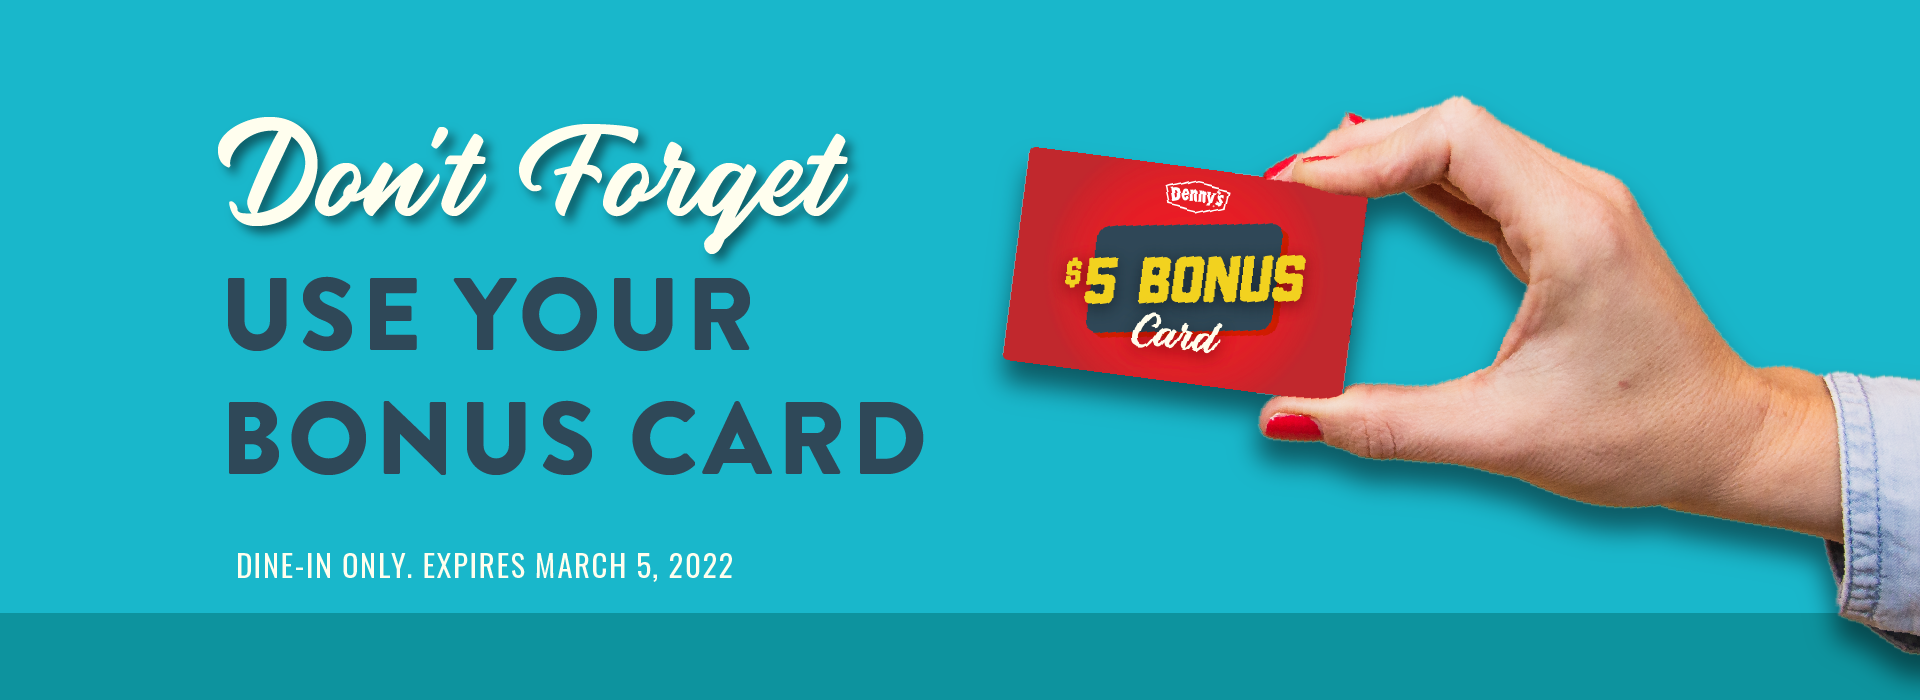 Use Your Denny’s Bonus Card